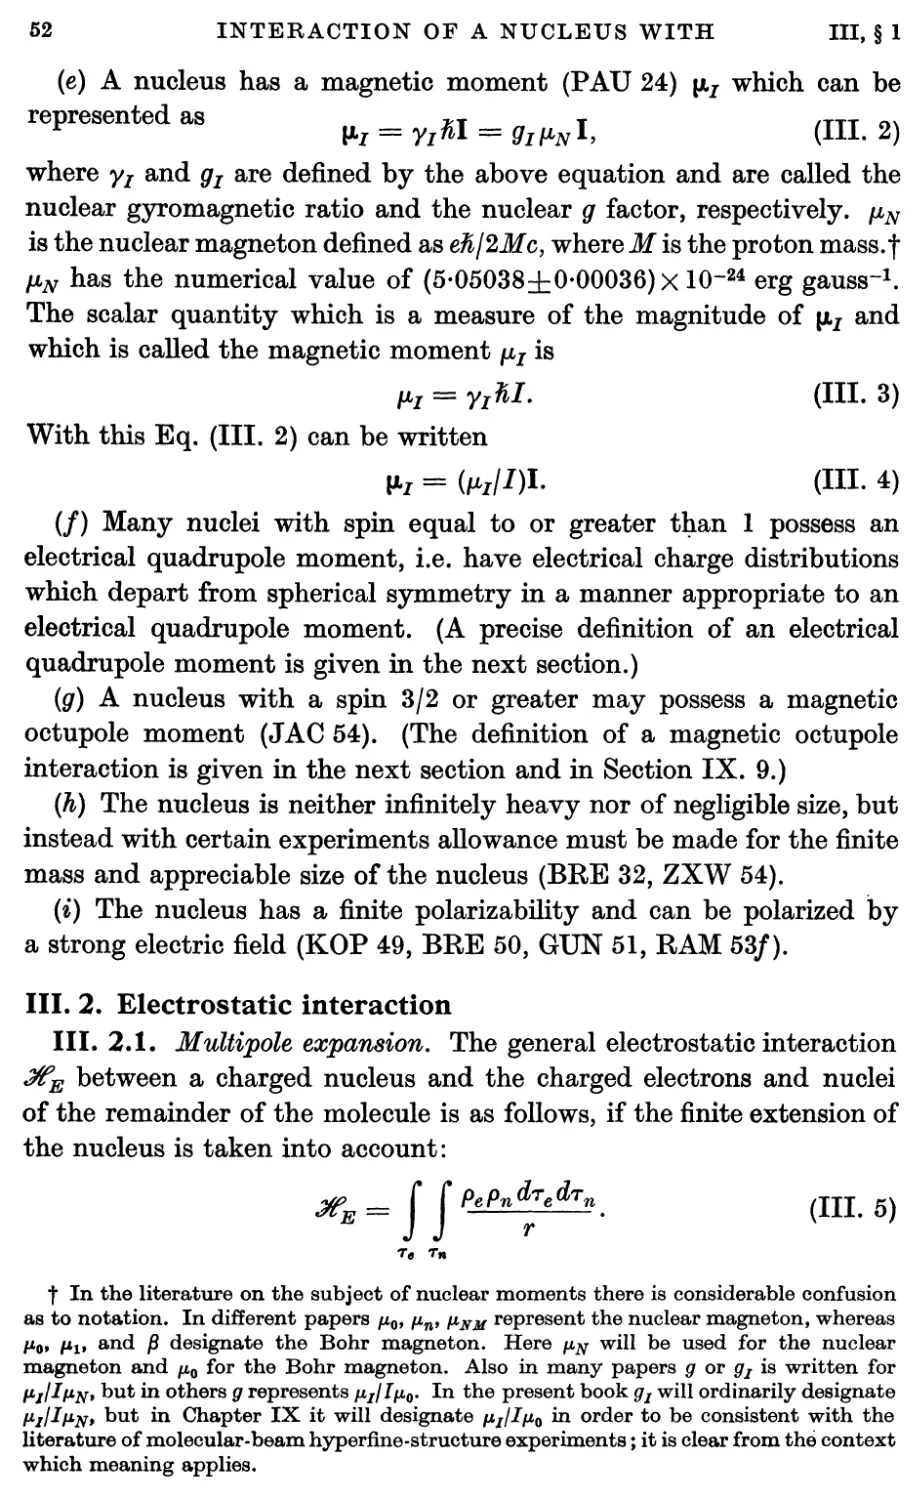 III.2. Electrostatic Interaction